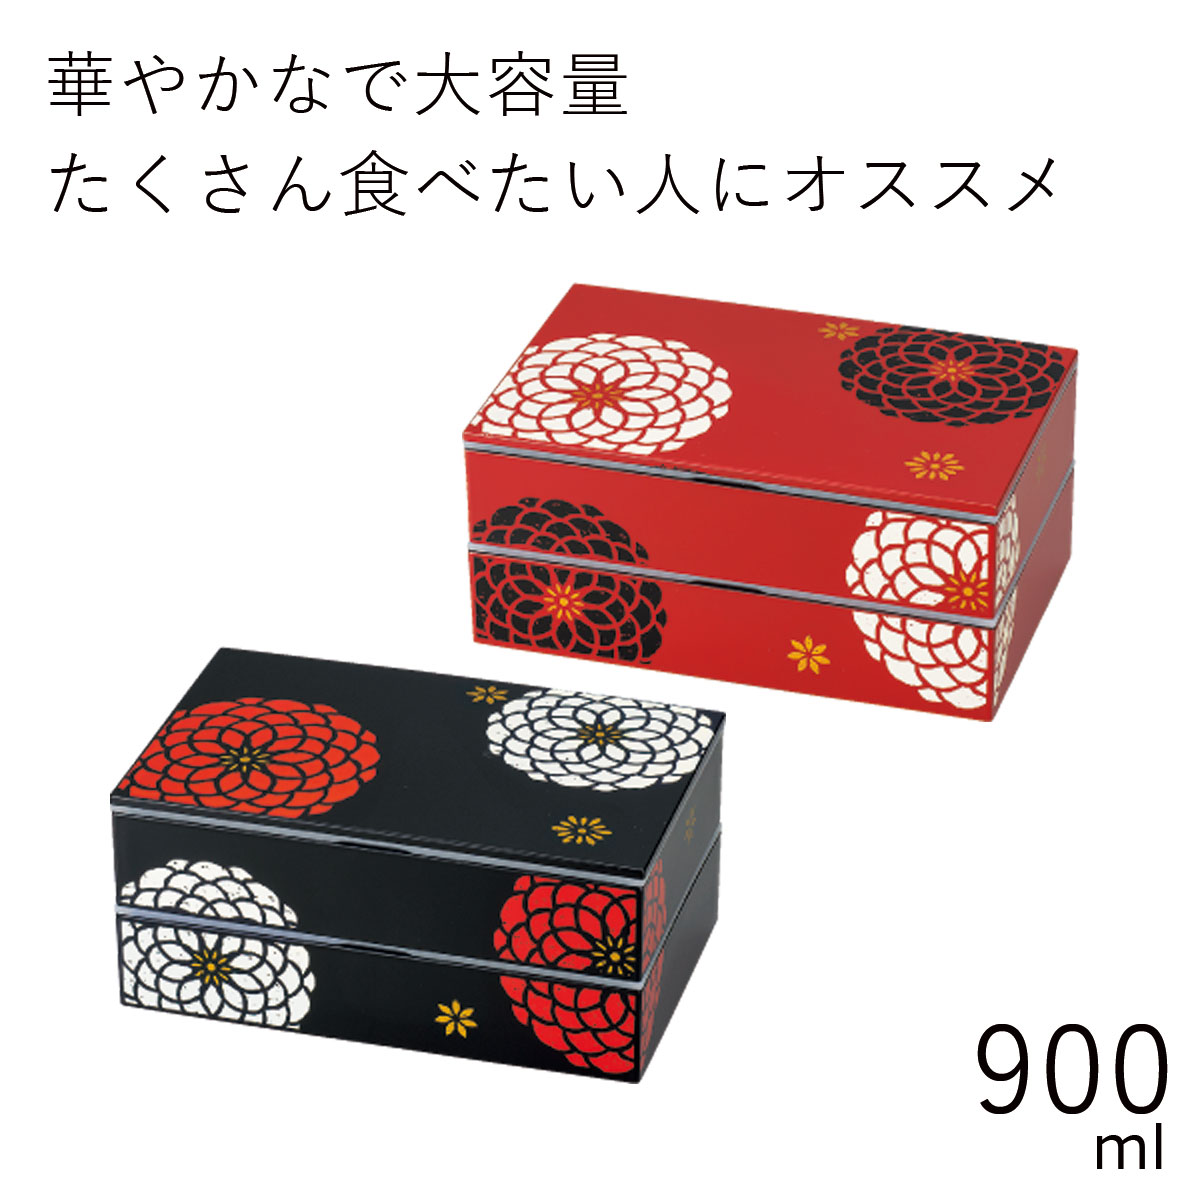 弁当箱”HAKOYA スクエア二段弁当 百華 900ml”日本製弁当箱 2段 花柄 おしゃれ 大容量 男子 LUNCH BOX